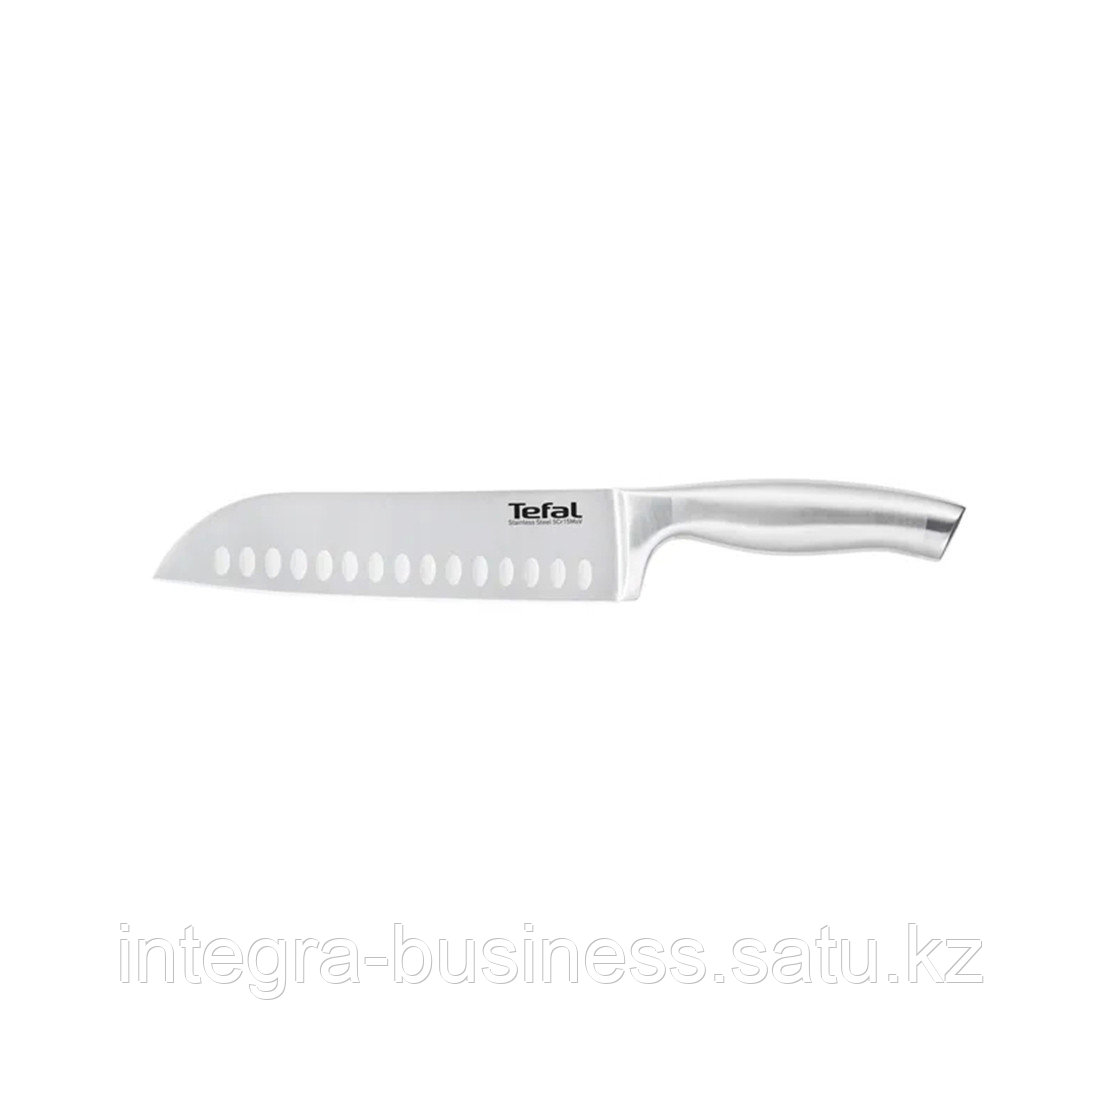 Нож сантоку 18 см TEFAL K1700674, фото 1